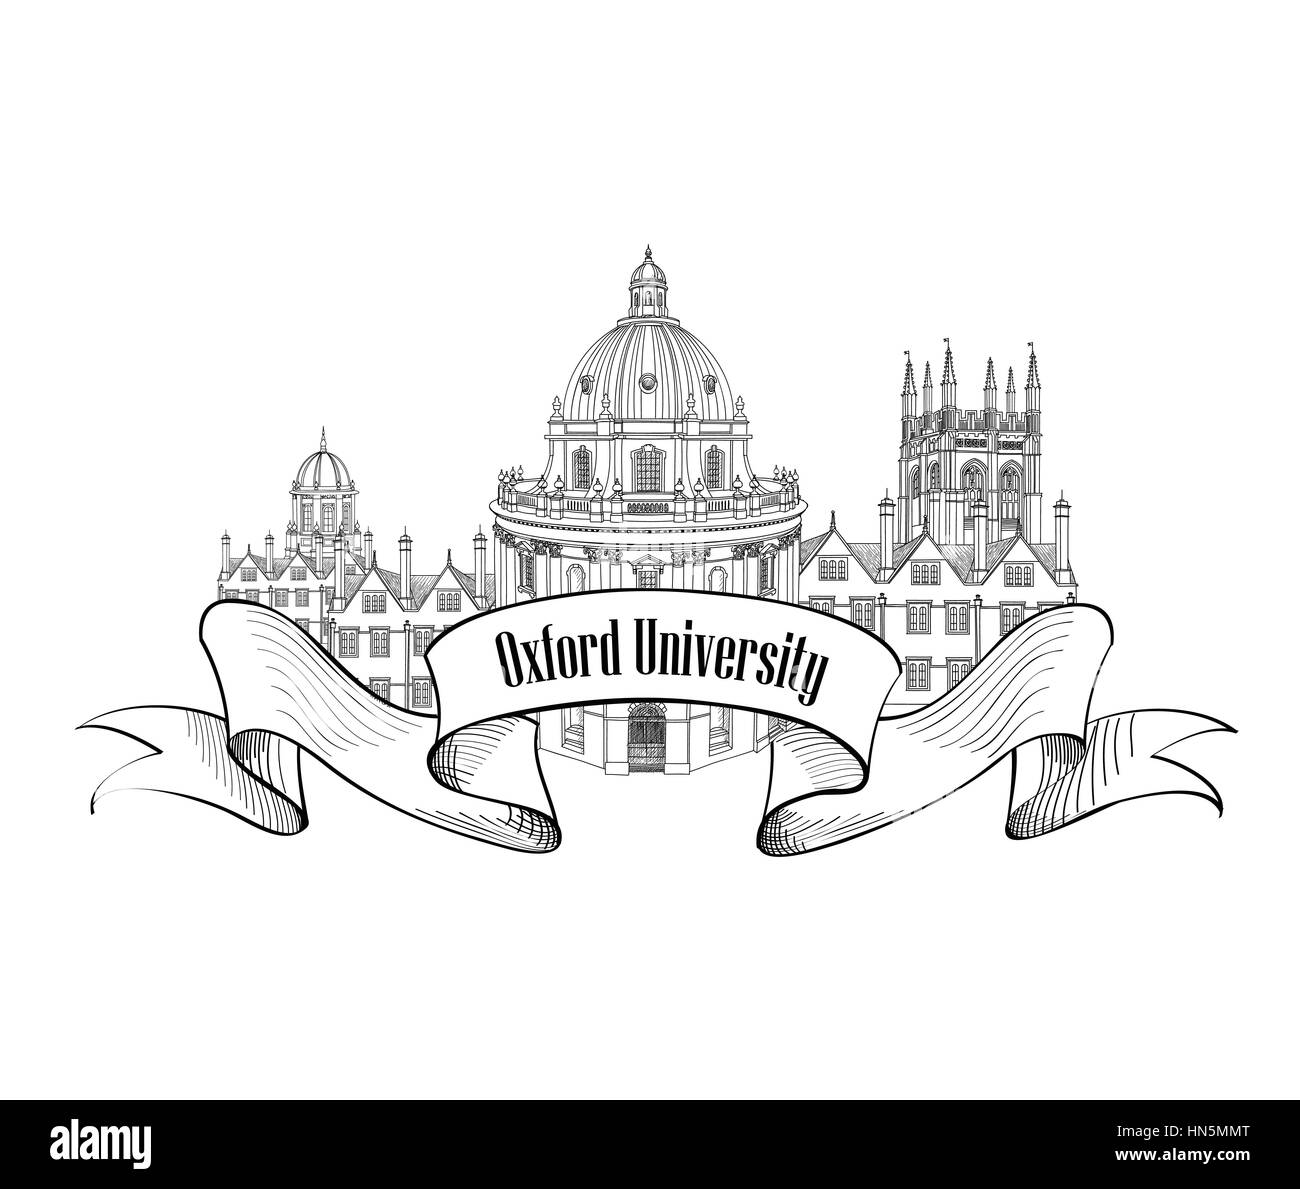 Oxford univercity Label. Oxford City Skyline eingraviert. arcchitectural berühmten Gebäuden. Reisen Deutschland Zeichen Stock Vektor